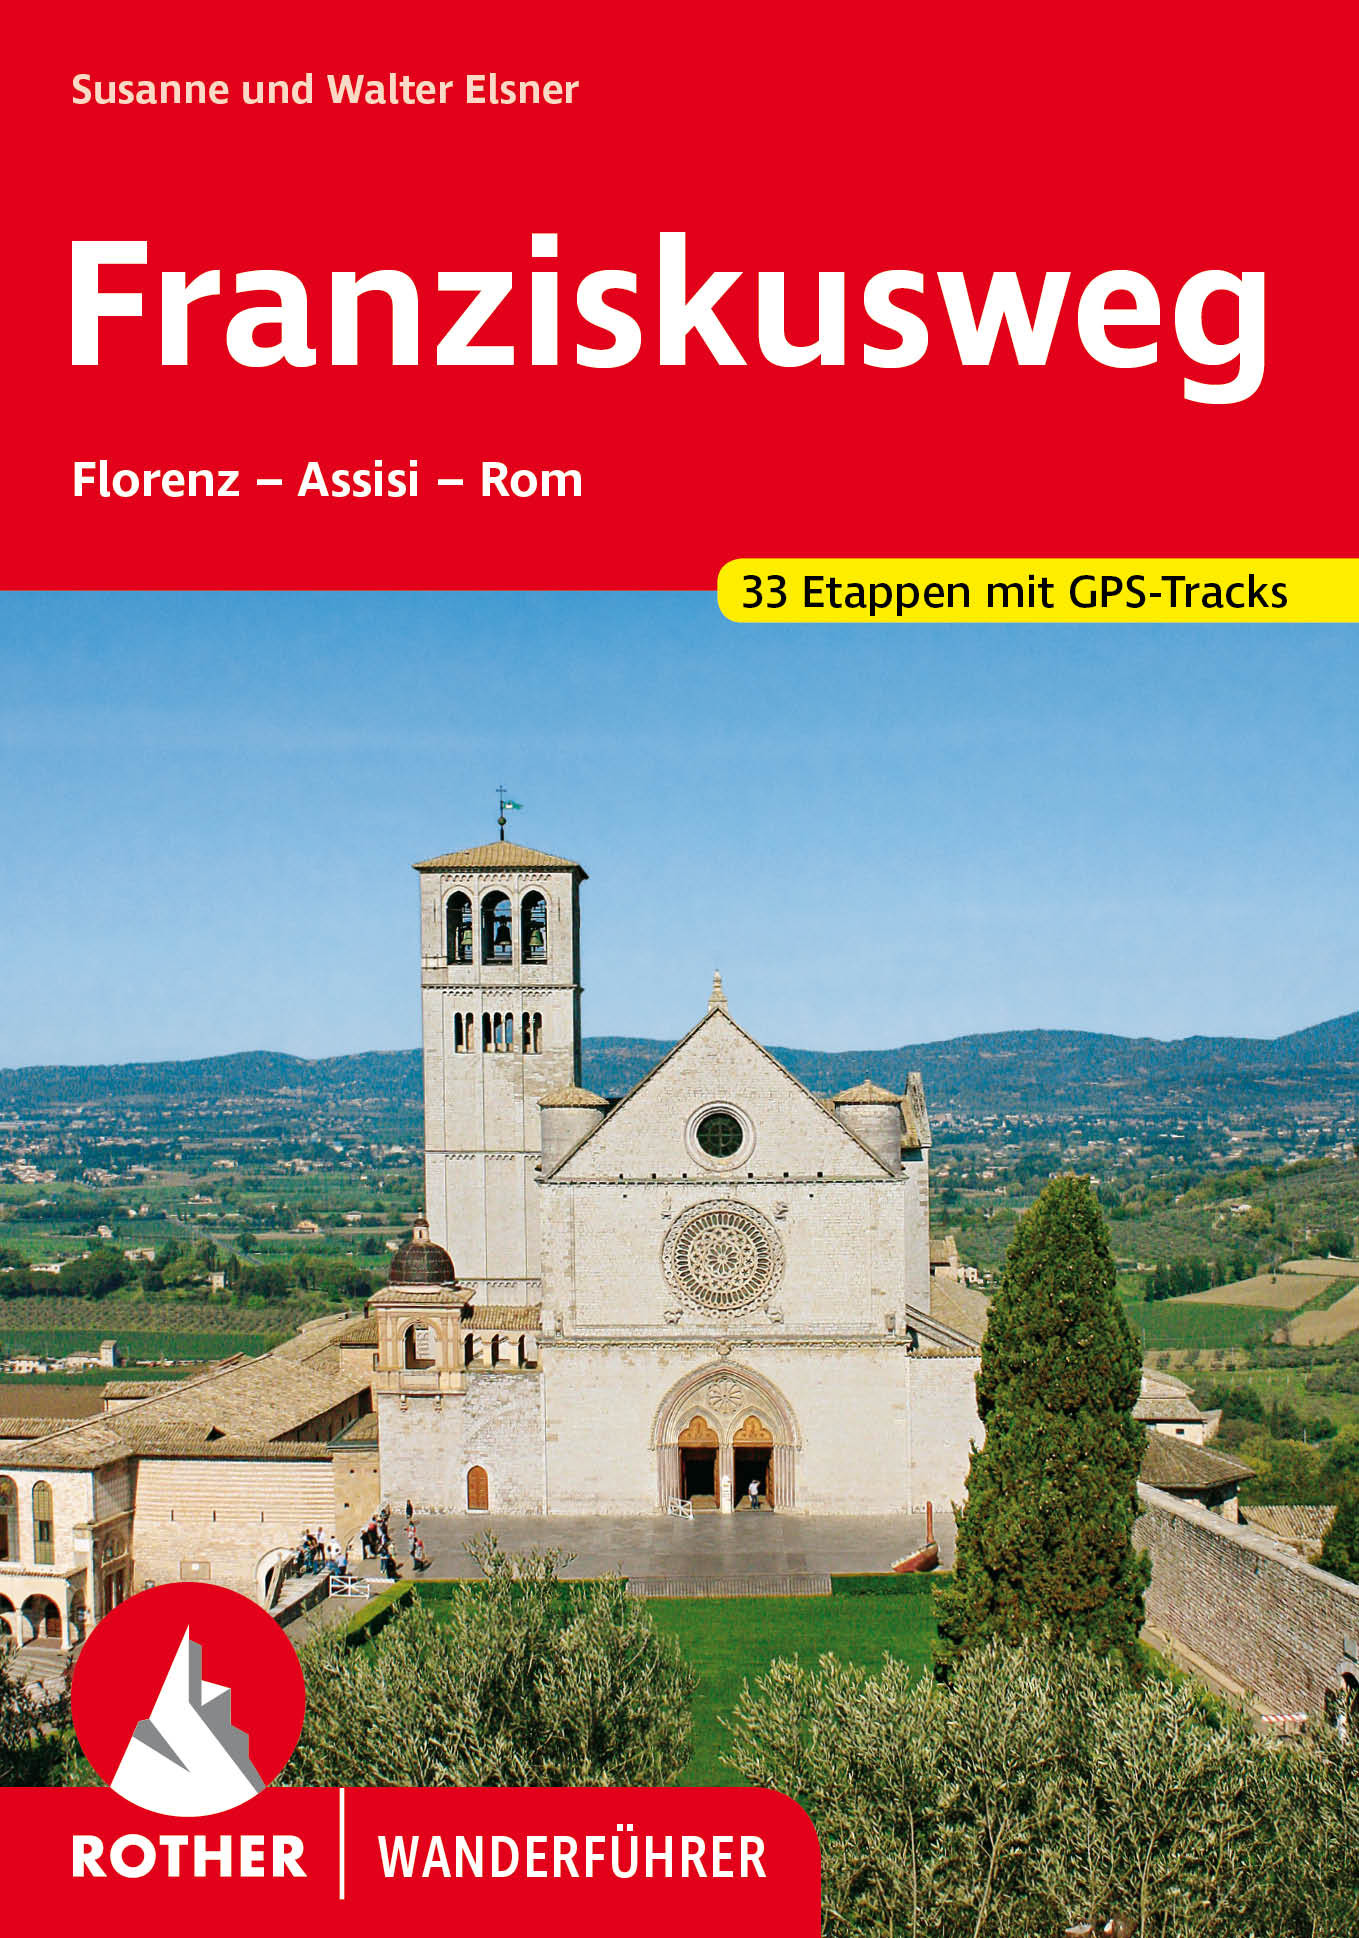 Online bestellen: Wandelgids Franziskusweg | Rother Bergverlag